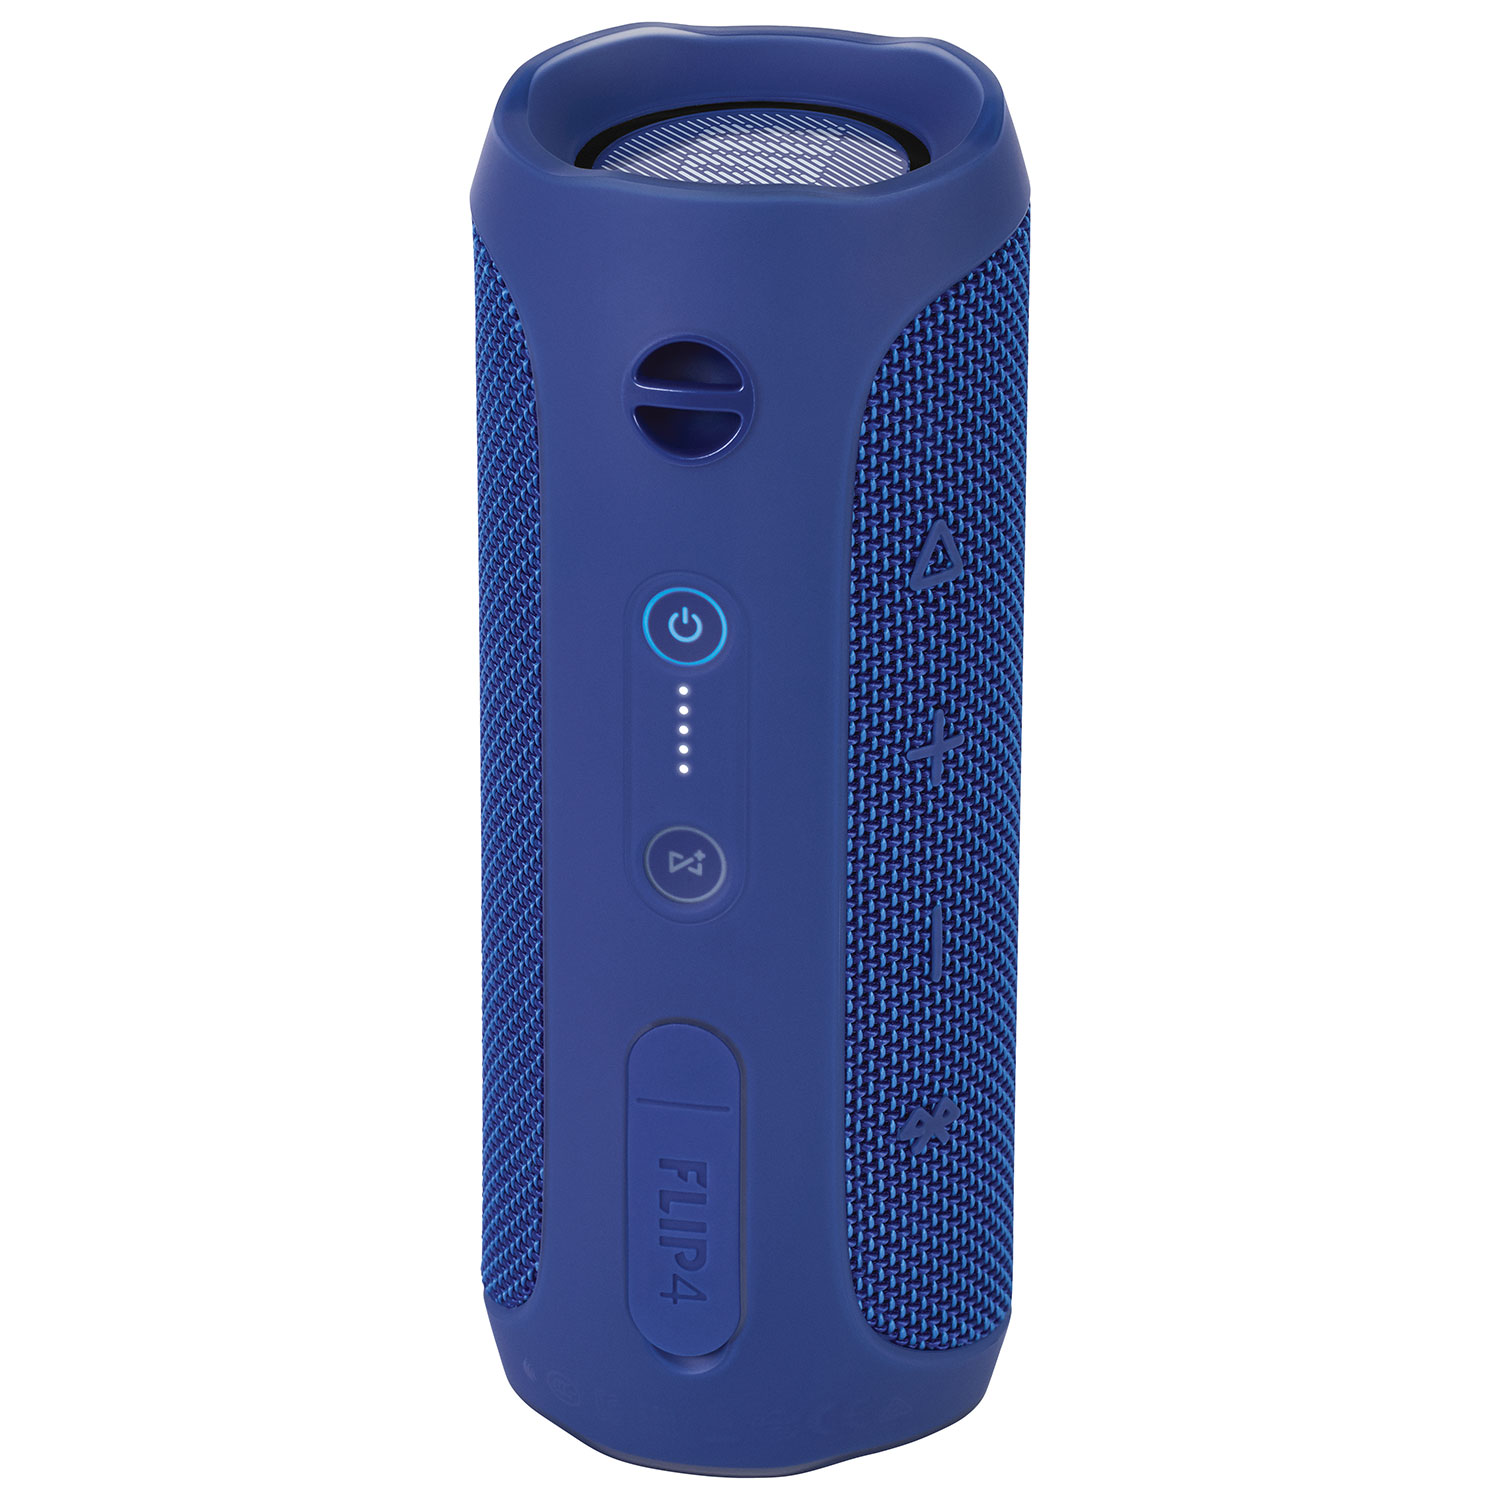 JBL Flip 4 Waterproof Bluetooth Wireless Speaker - Blue